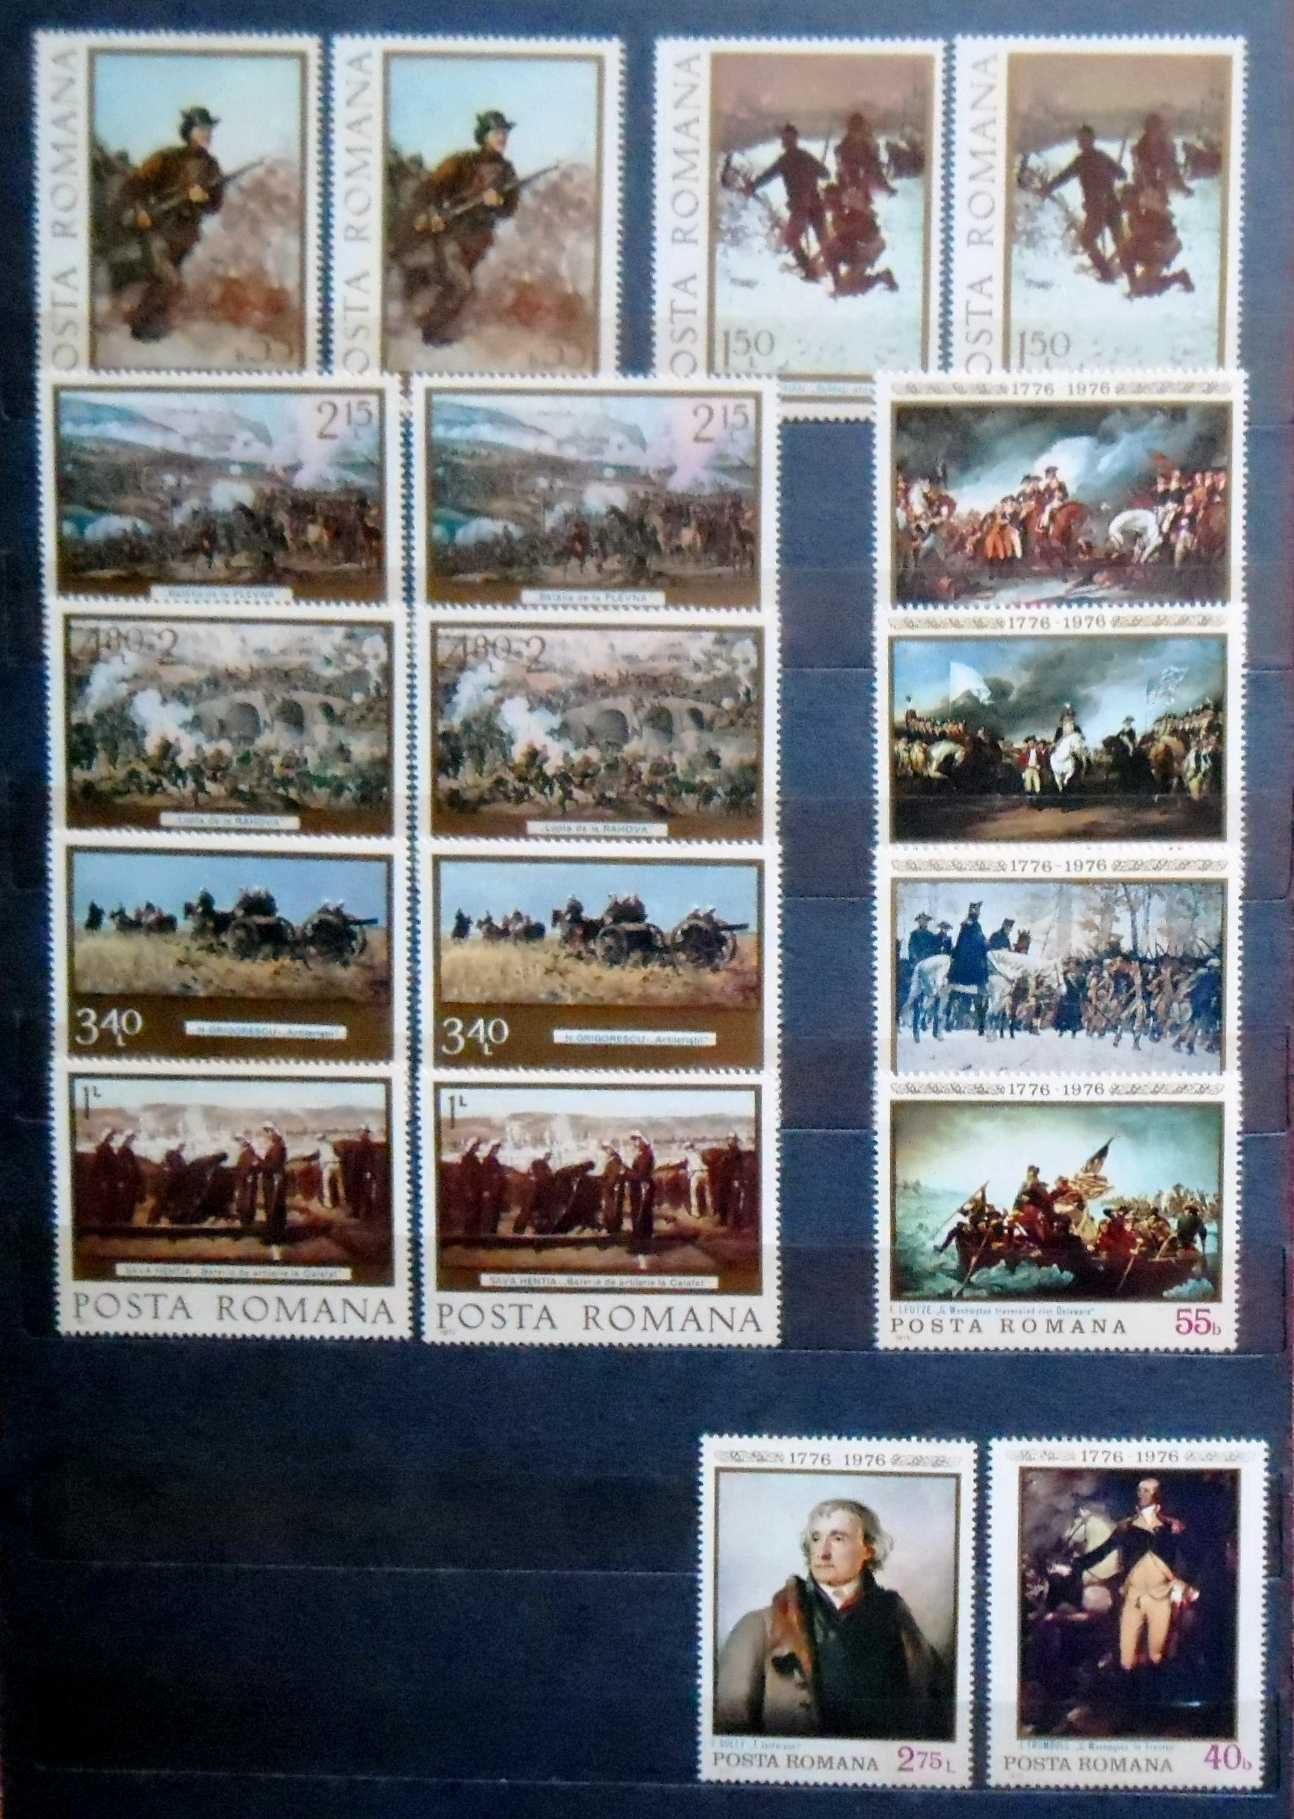 Lot timbre pictură